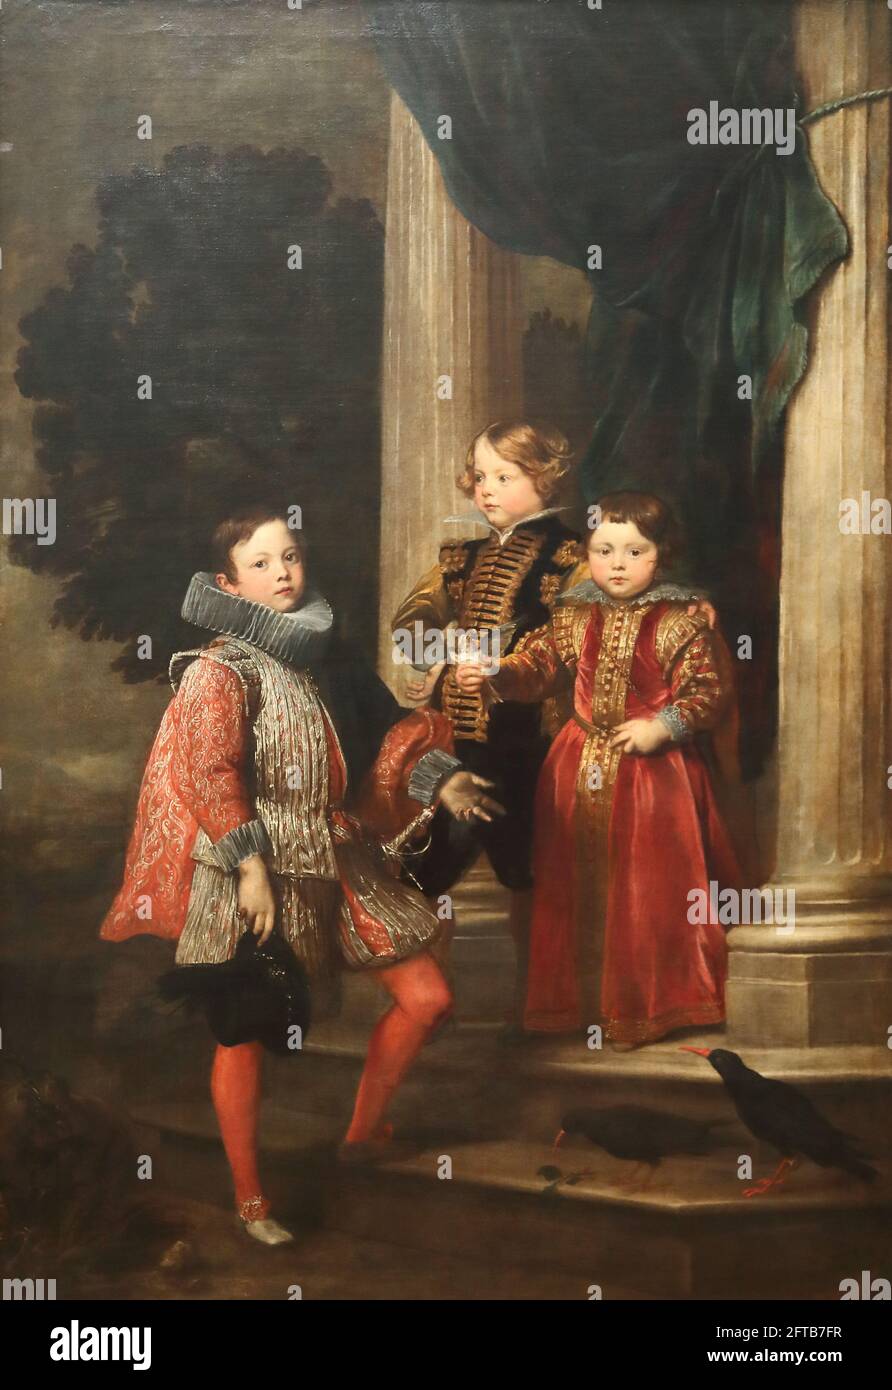 Los niños Balbi del pintor barroco flamenco Anthony van Dyck en la National Gallery, Londres, Reino Unido Foto de stock